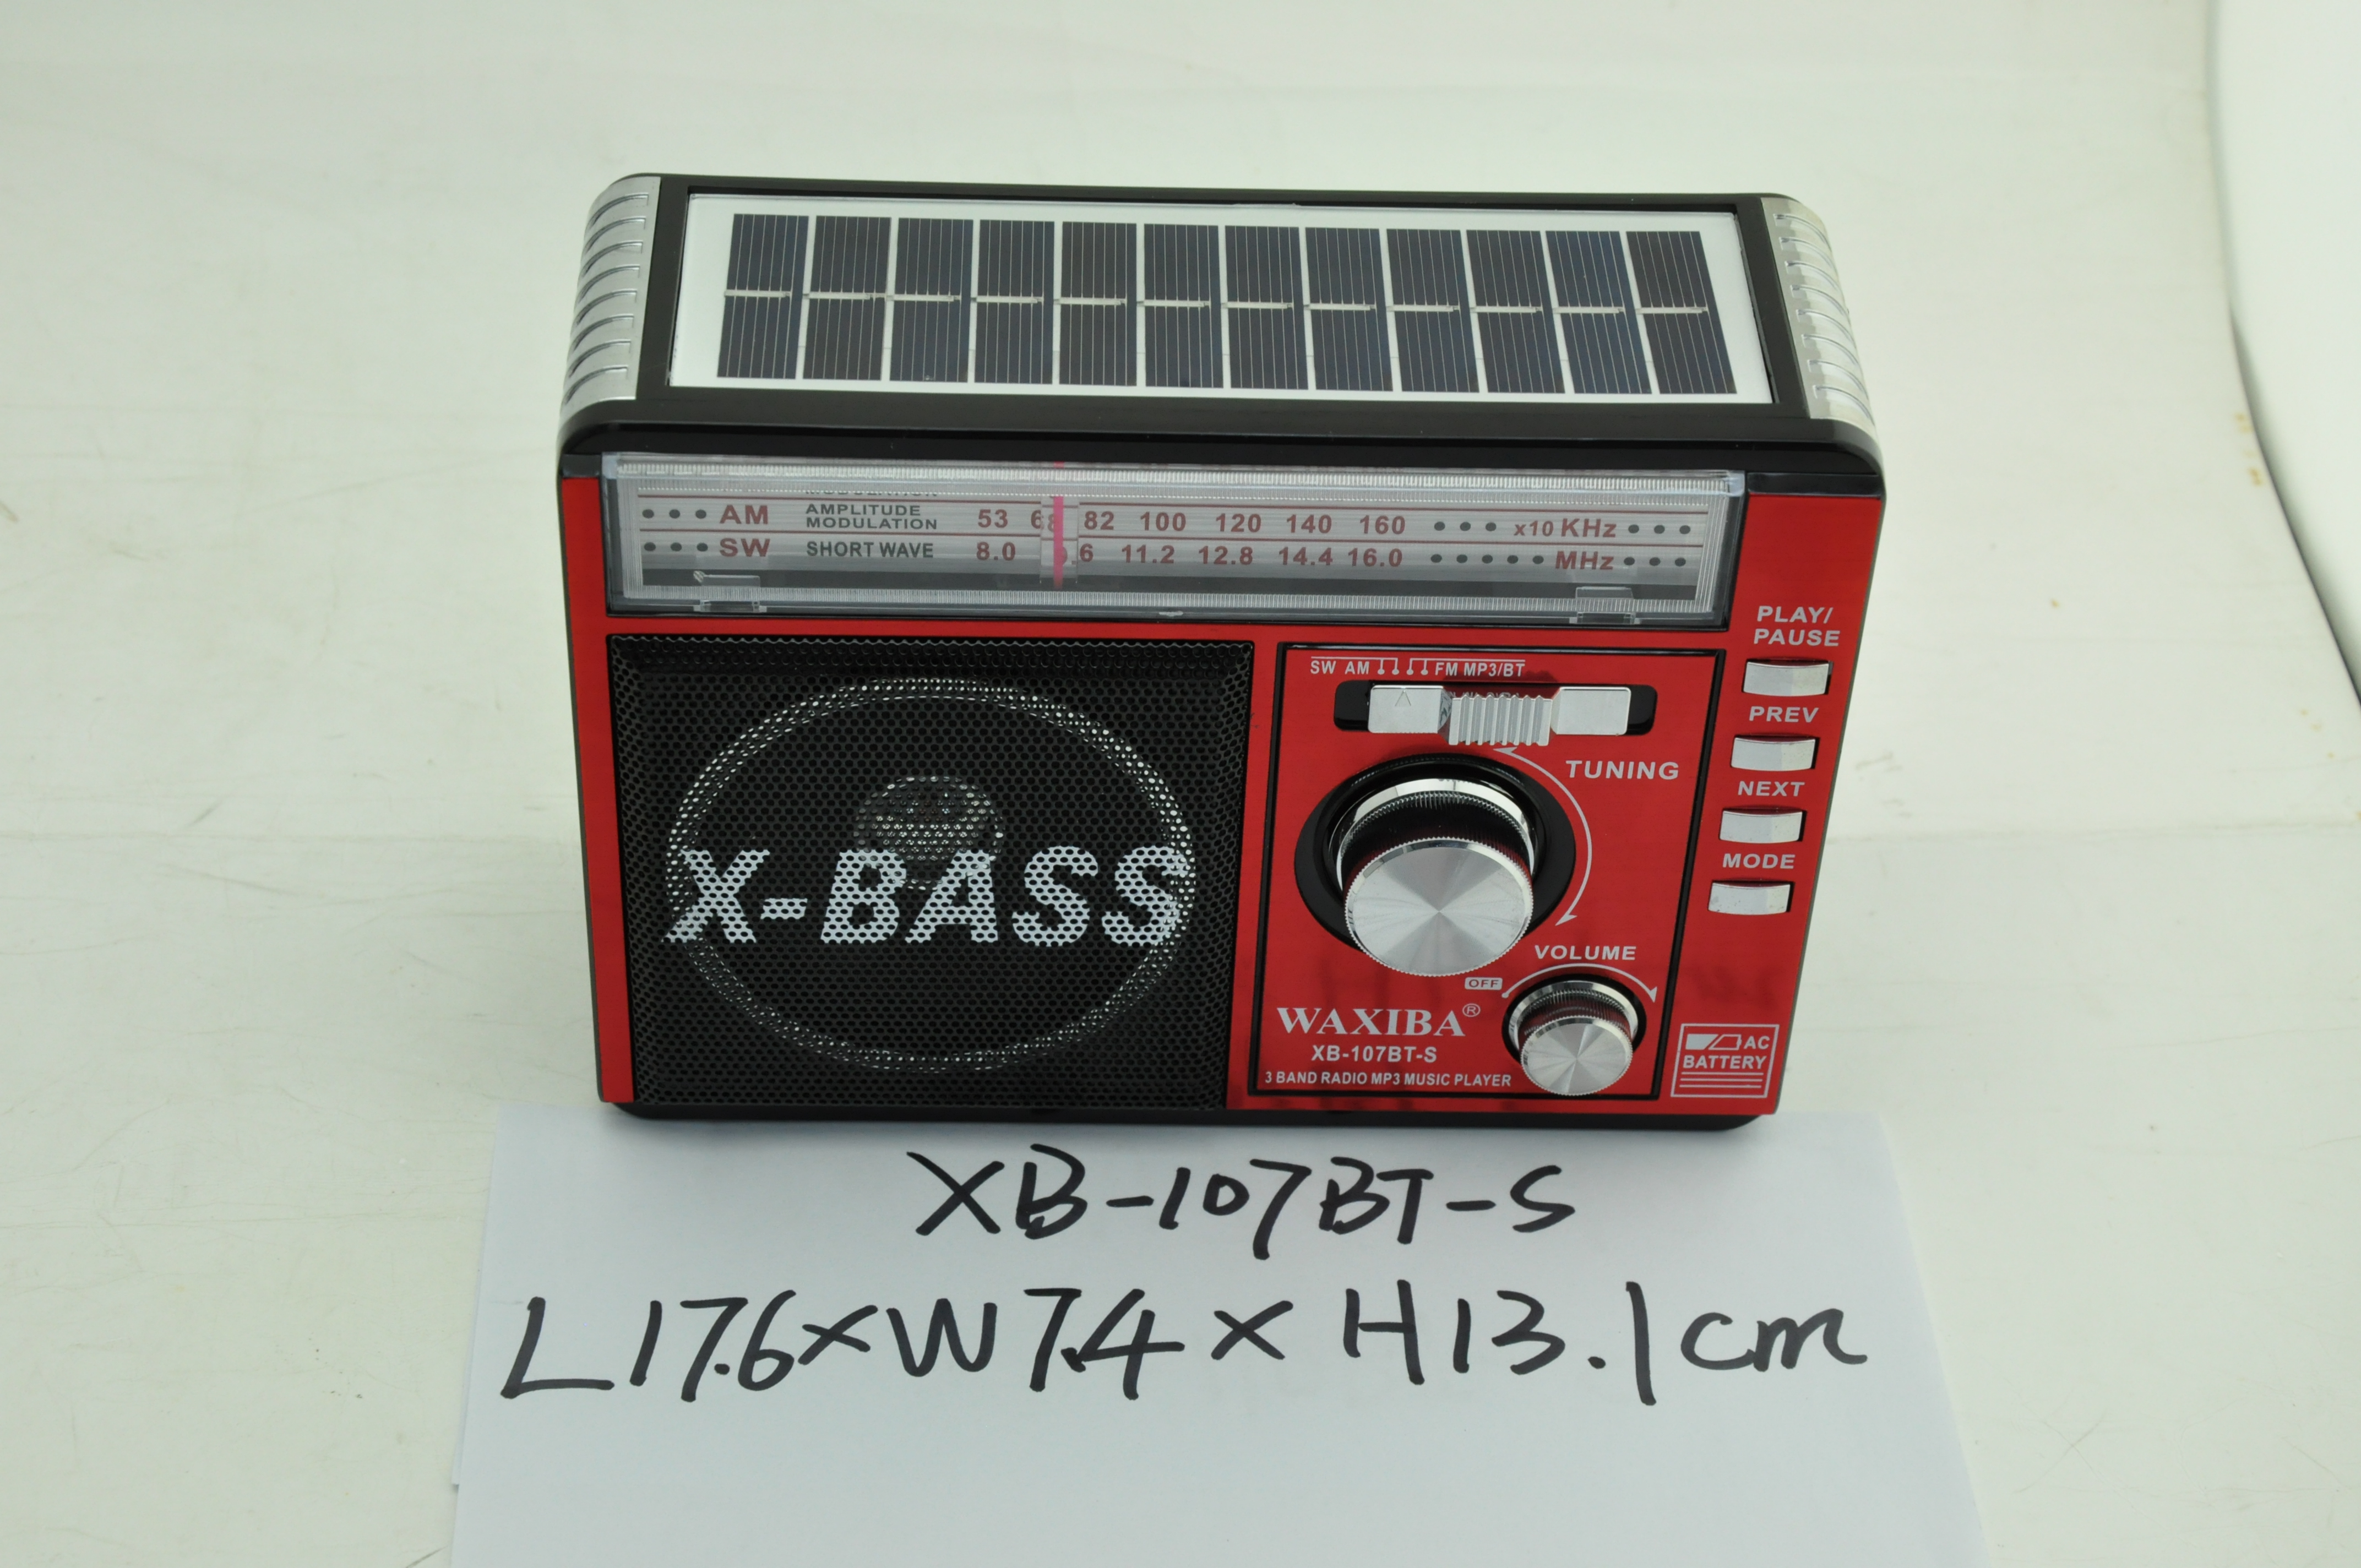 XB-107BT-S solar radio bluetooth radio fm am sw radio